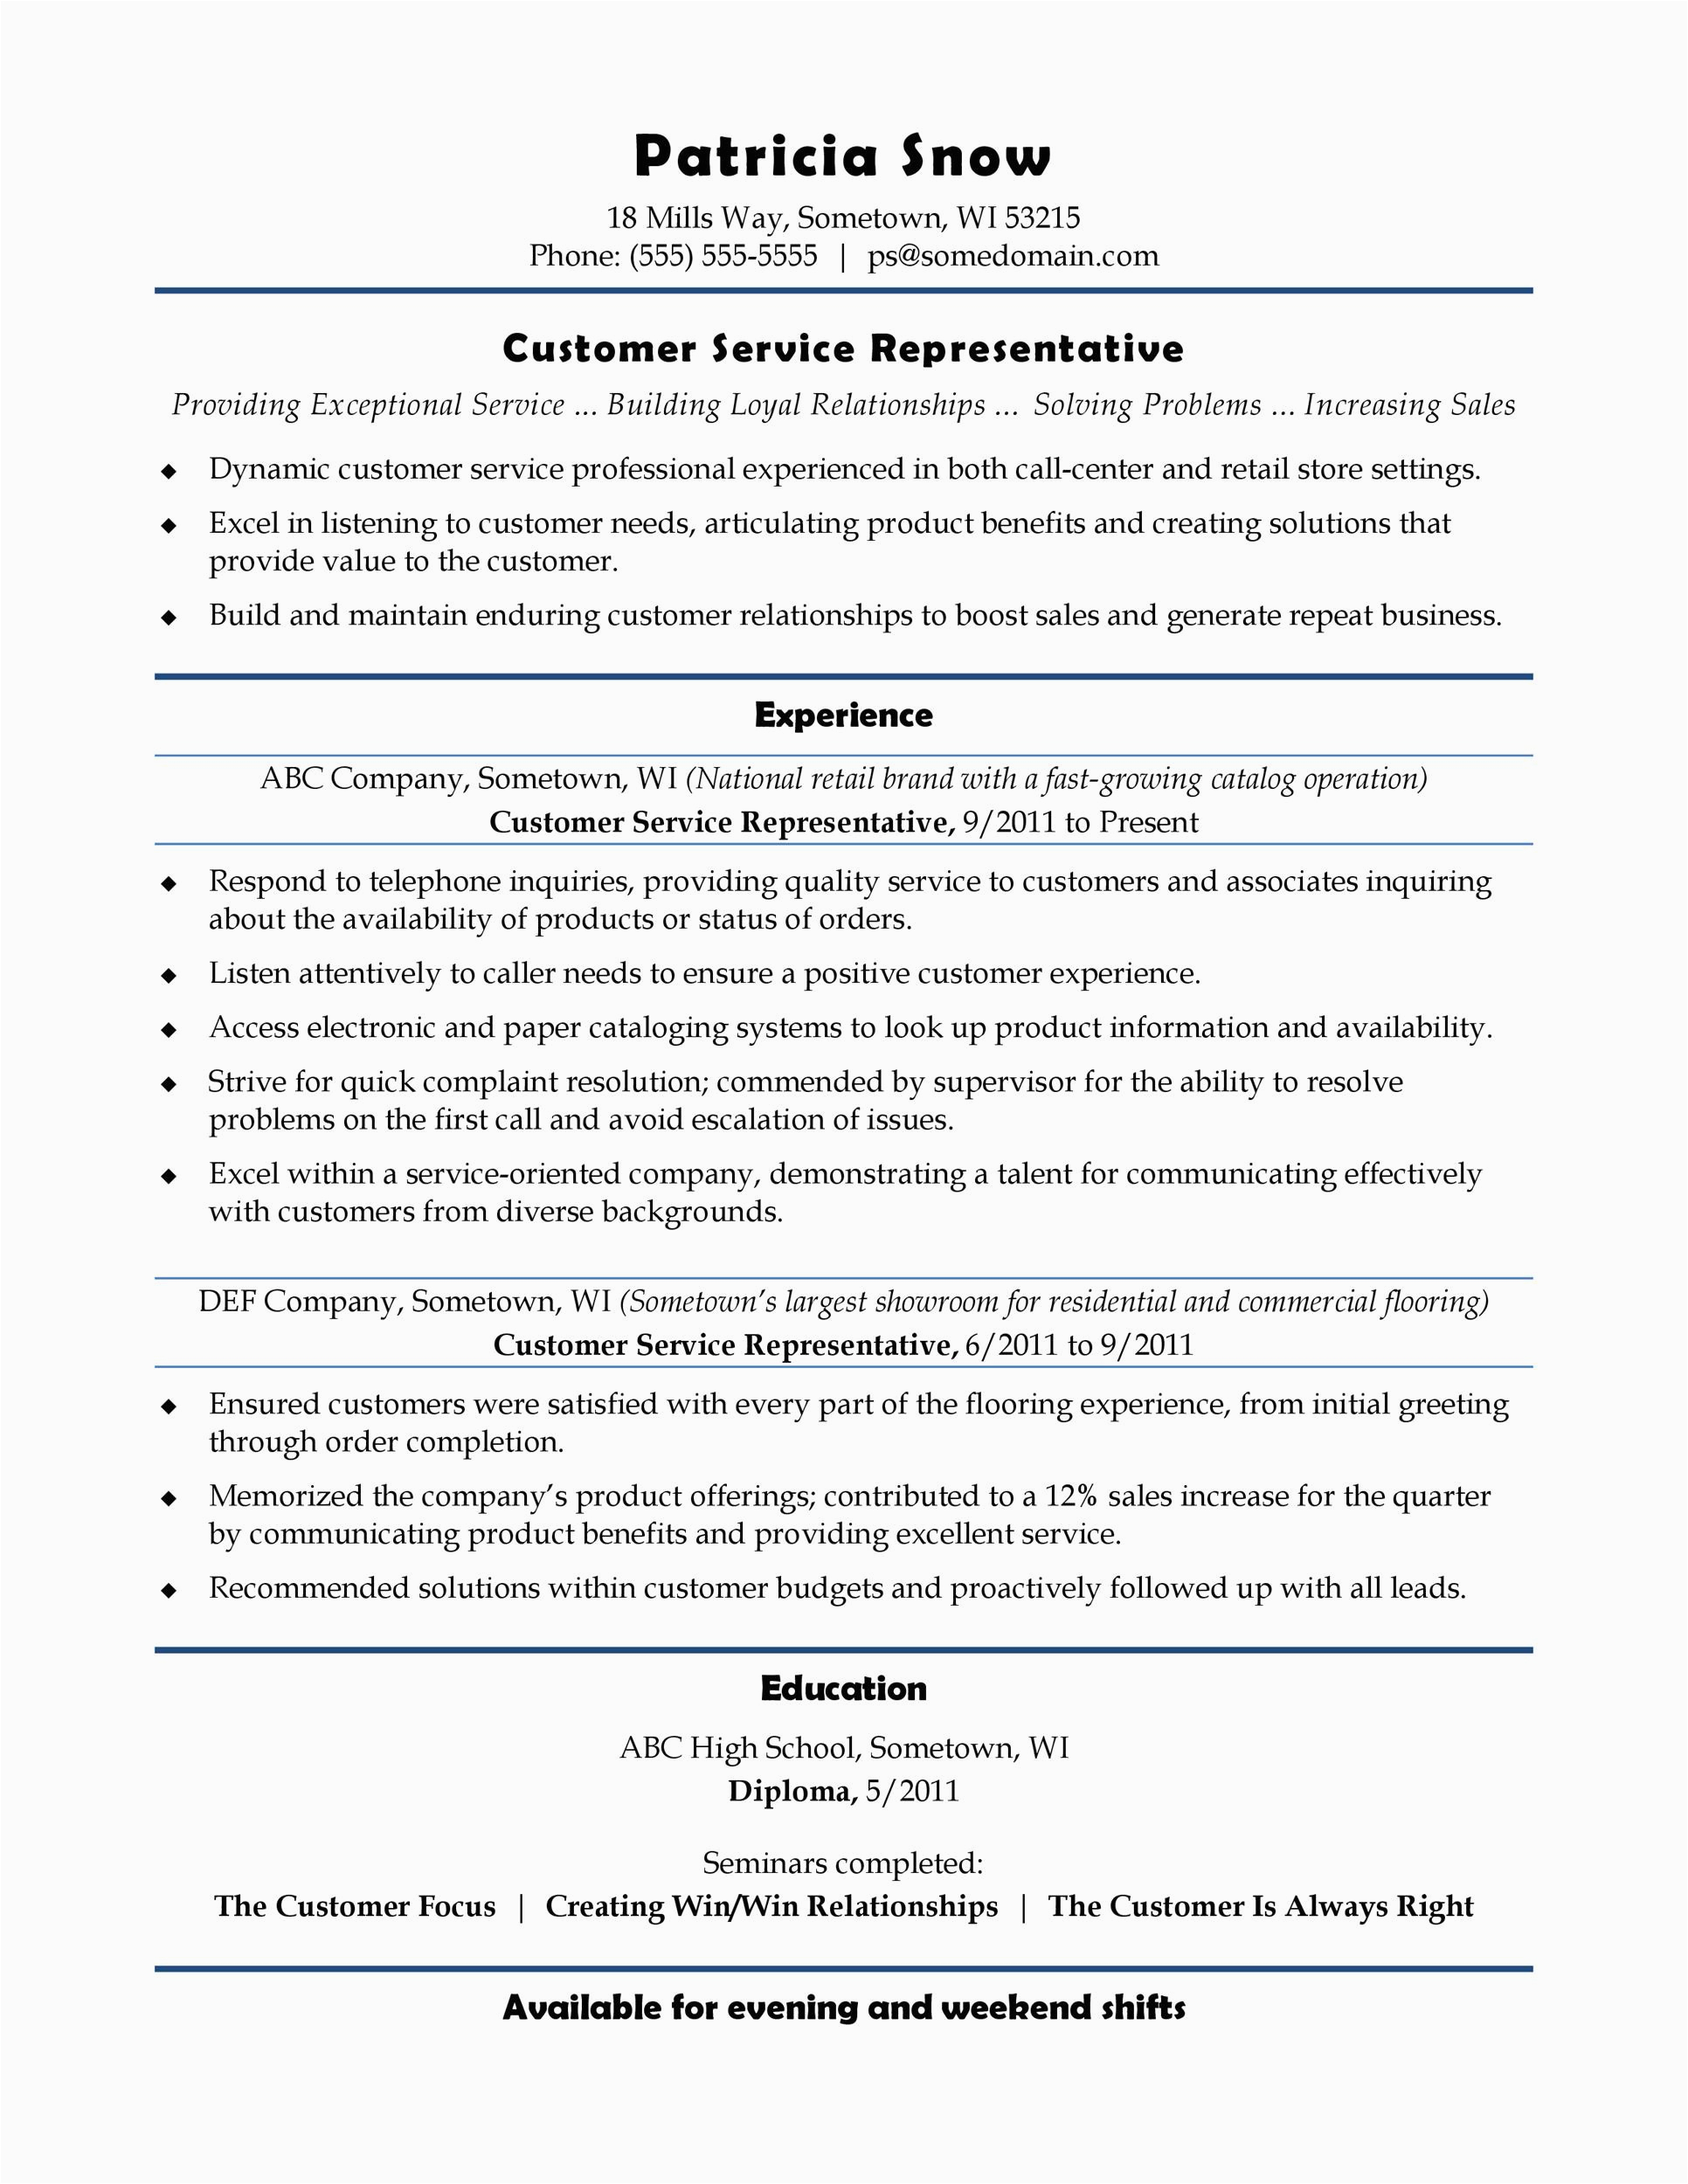 Skills for Resume Sample for Customer Service 30 Customer Service Resume Examples Templatelab